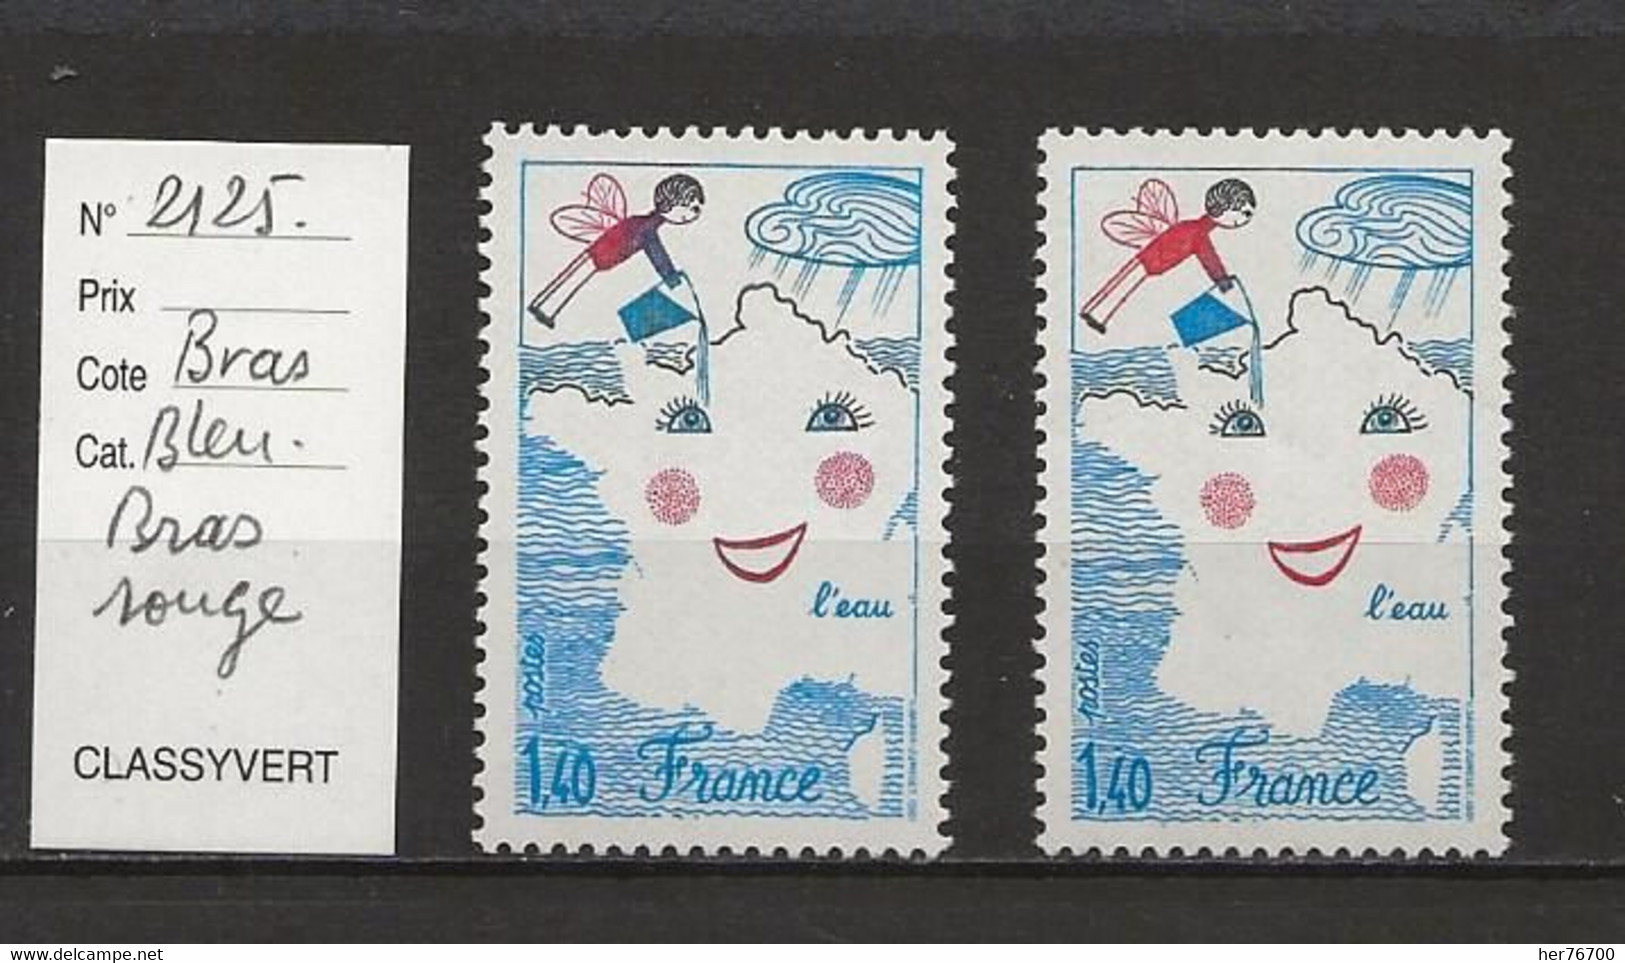 VARIETE FRANCAISE N° YVERT 2125b - Unused Stamps